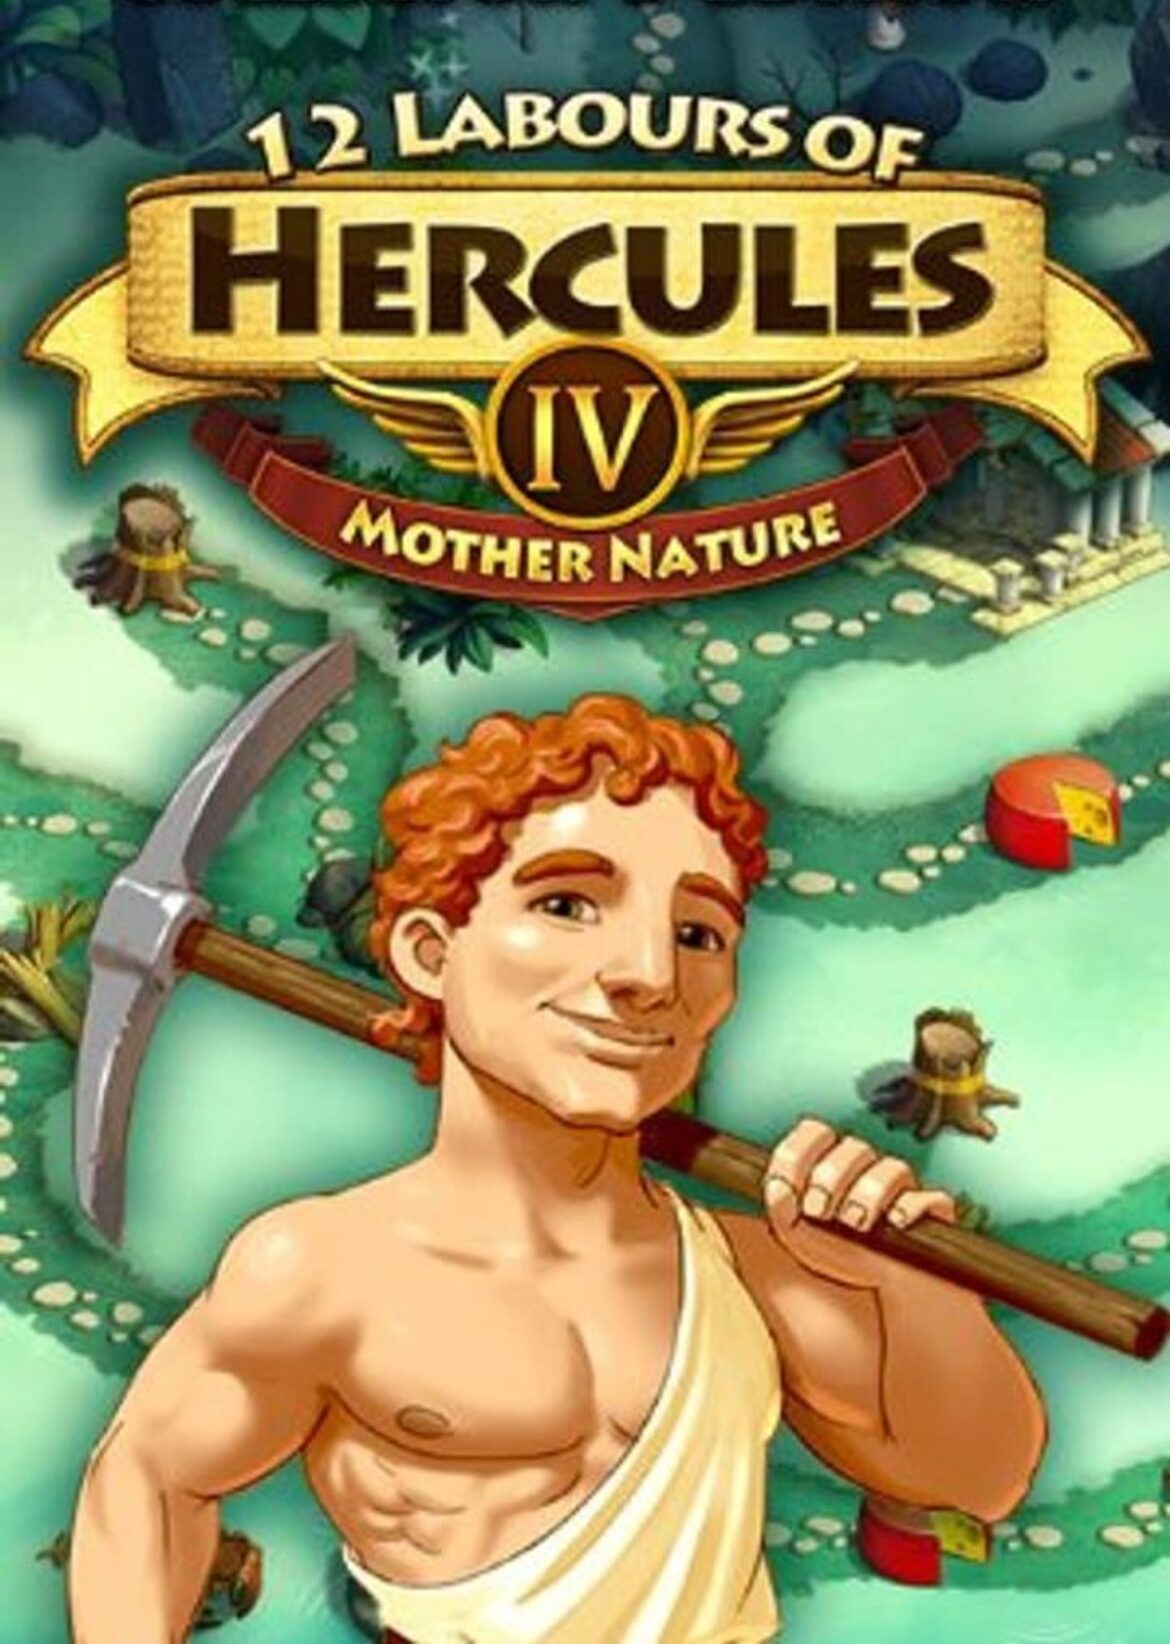 jaquette du jeu vidéo 12 Labours of Hercules IV: Mother Nature